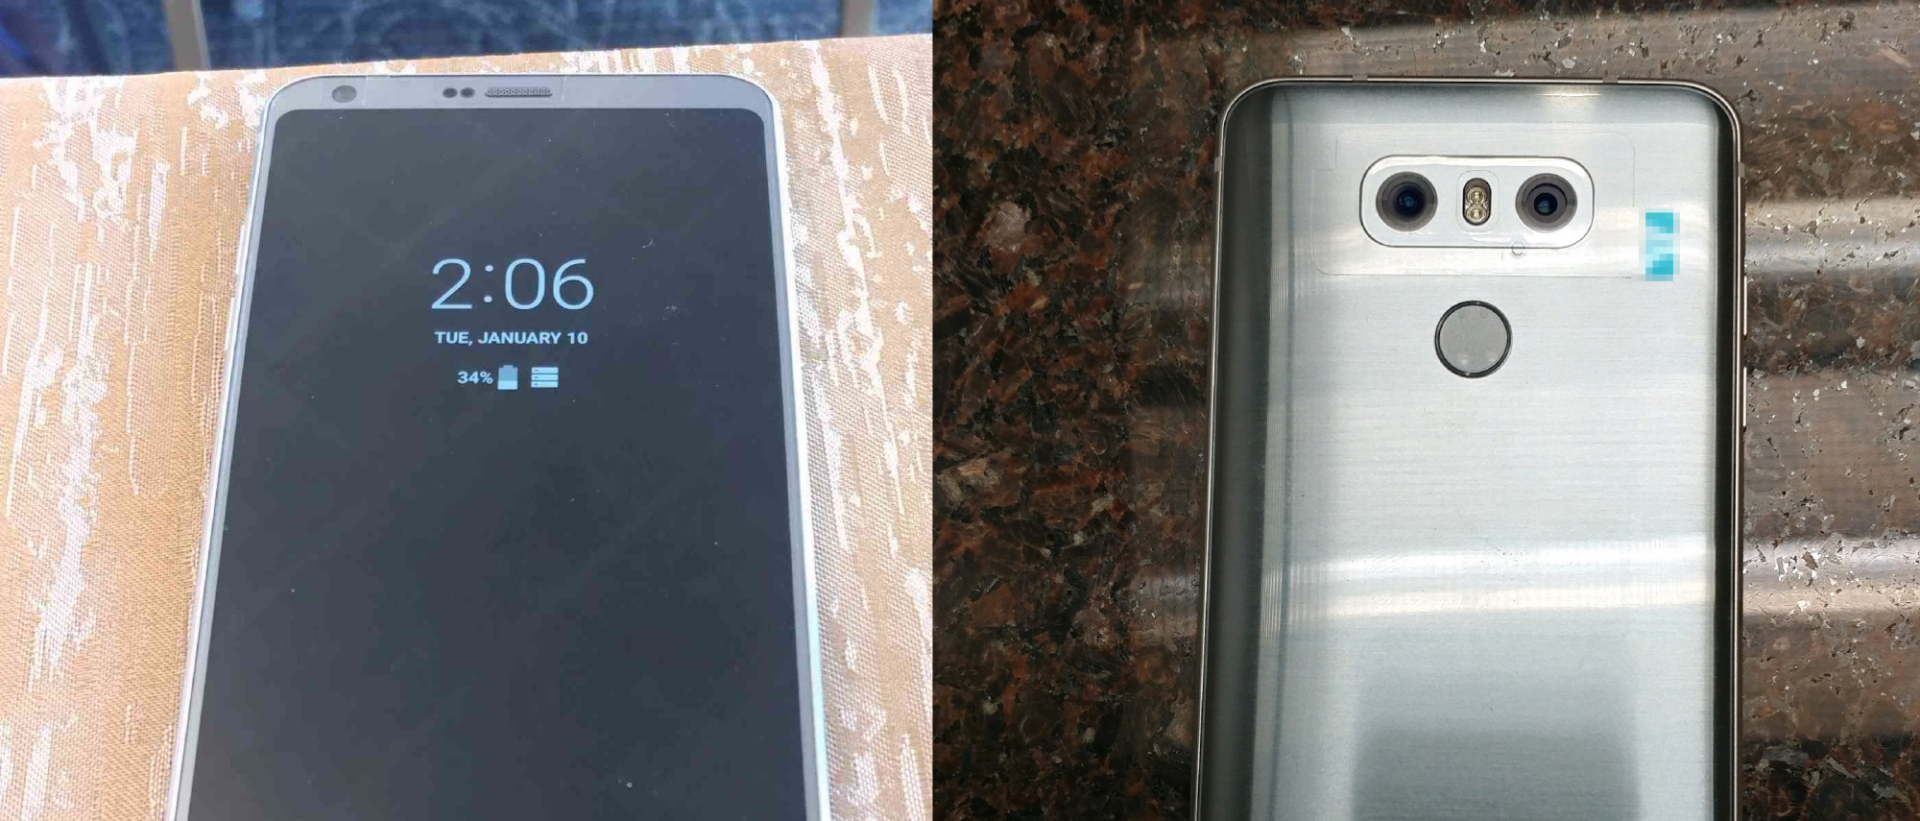 Hình ảnh trên tay của LG G6: chế độ 